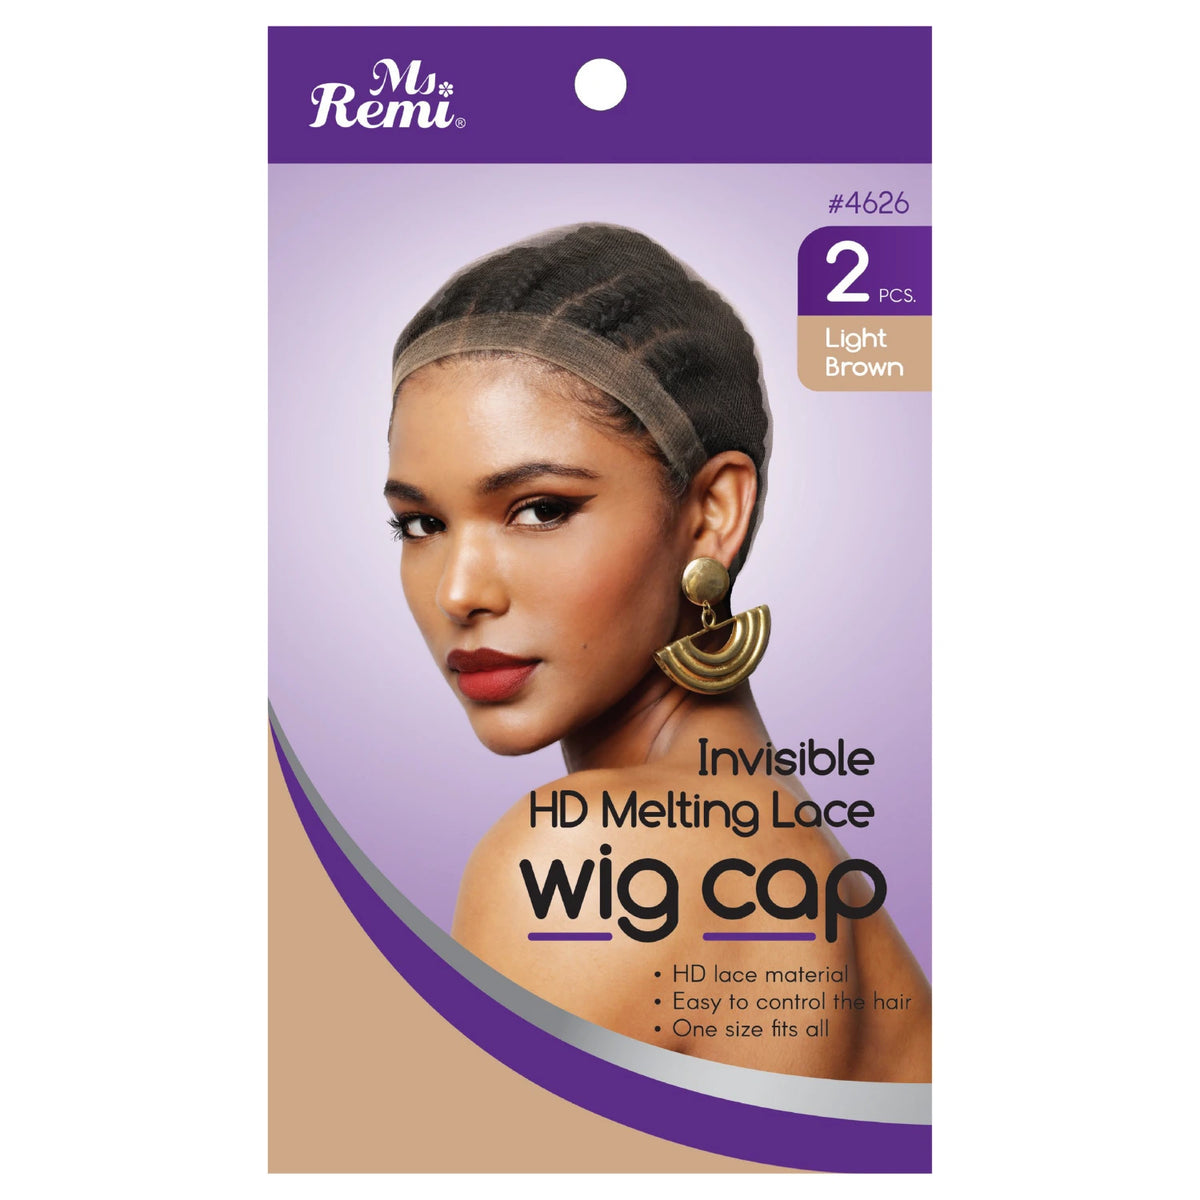 Ms. Remi Premium Deluxe Wig Band, Non-Slip - Light Brown